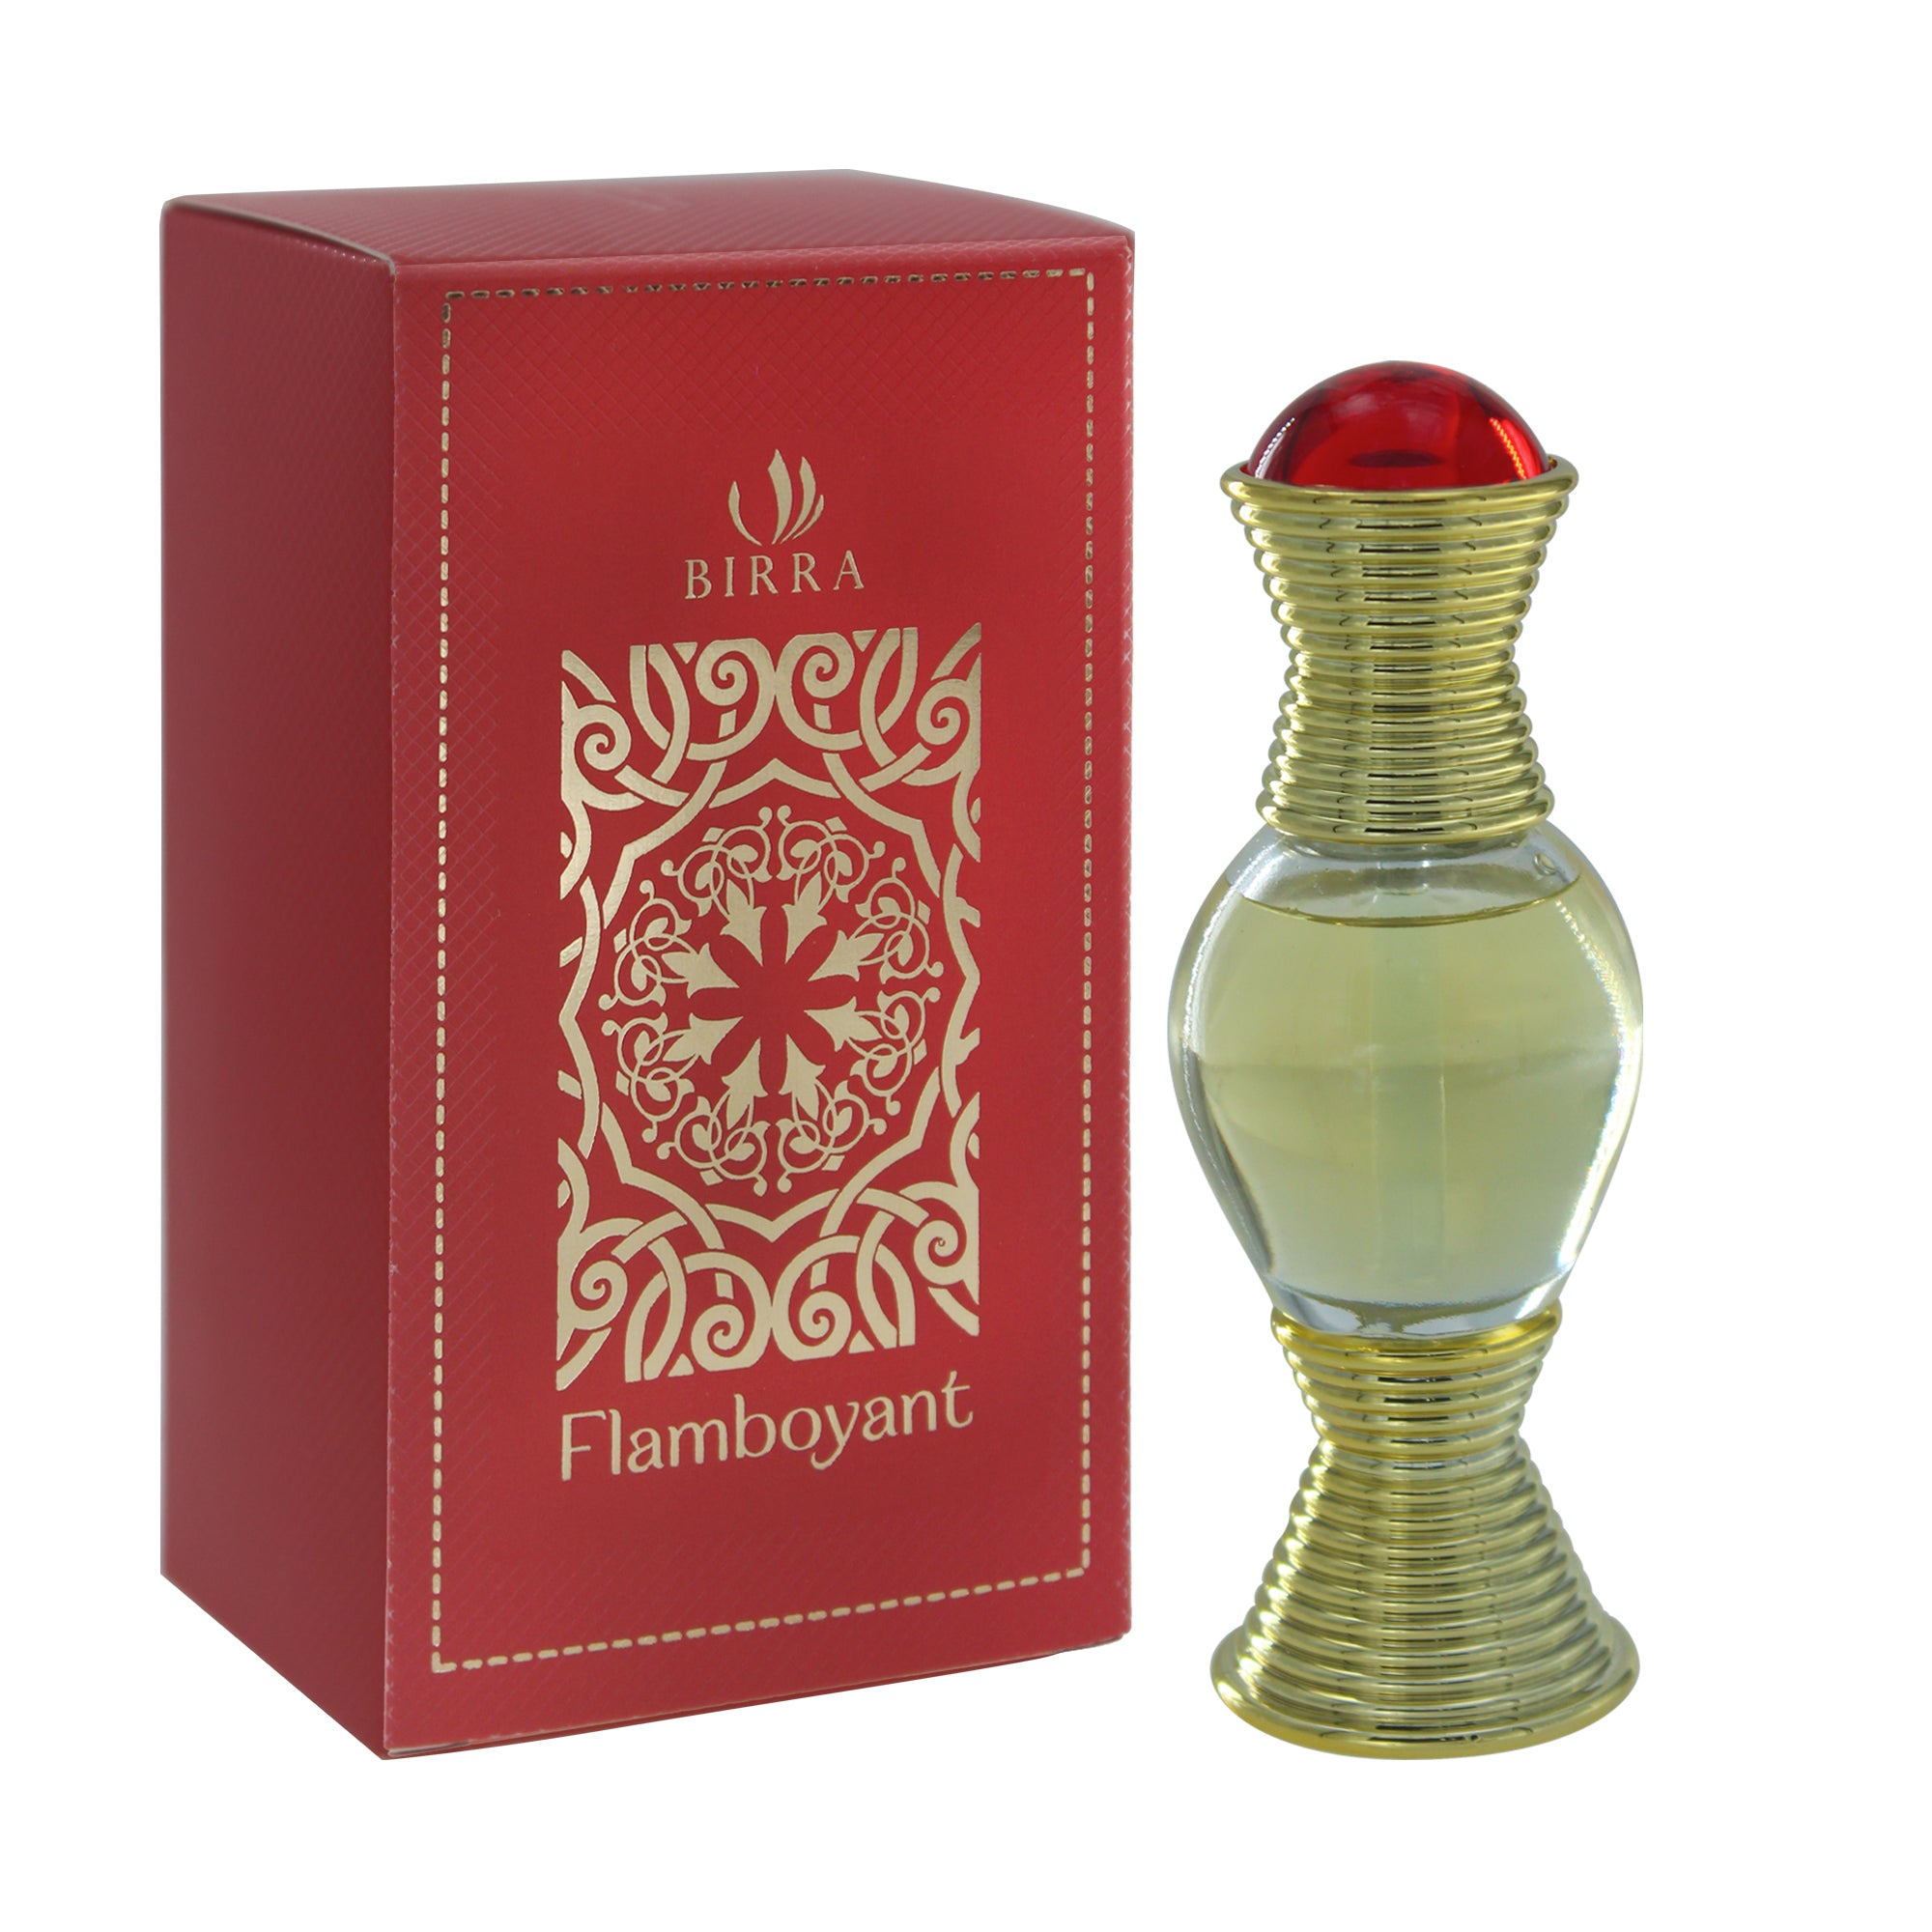 Flamboyant - Premium Attar